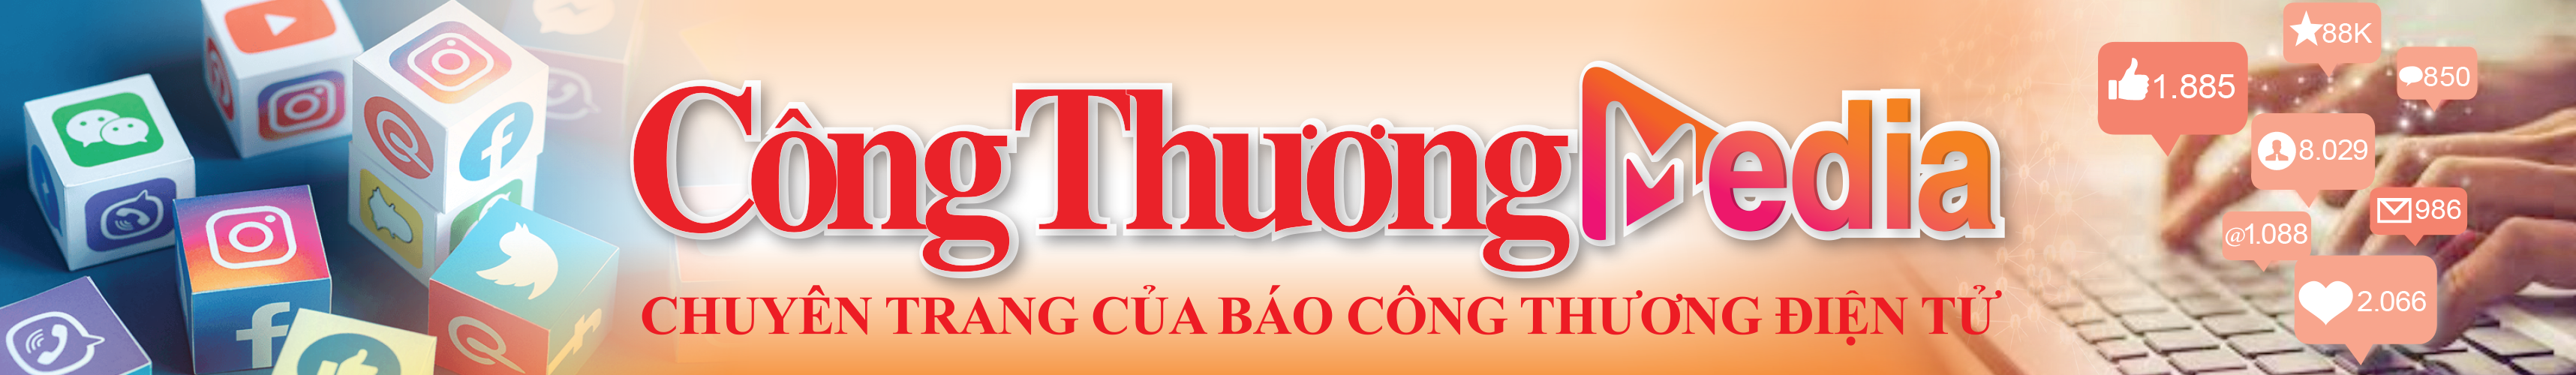 media-cong-thuong